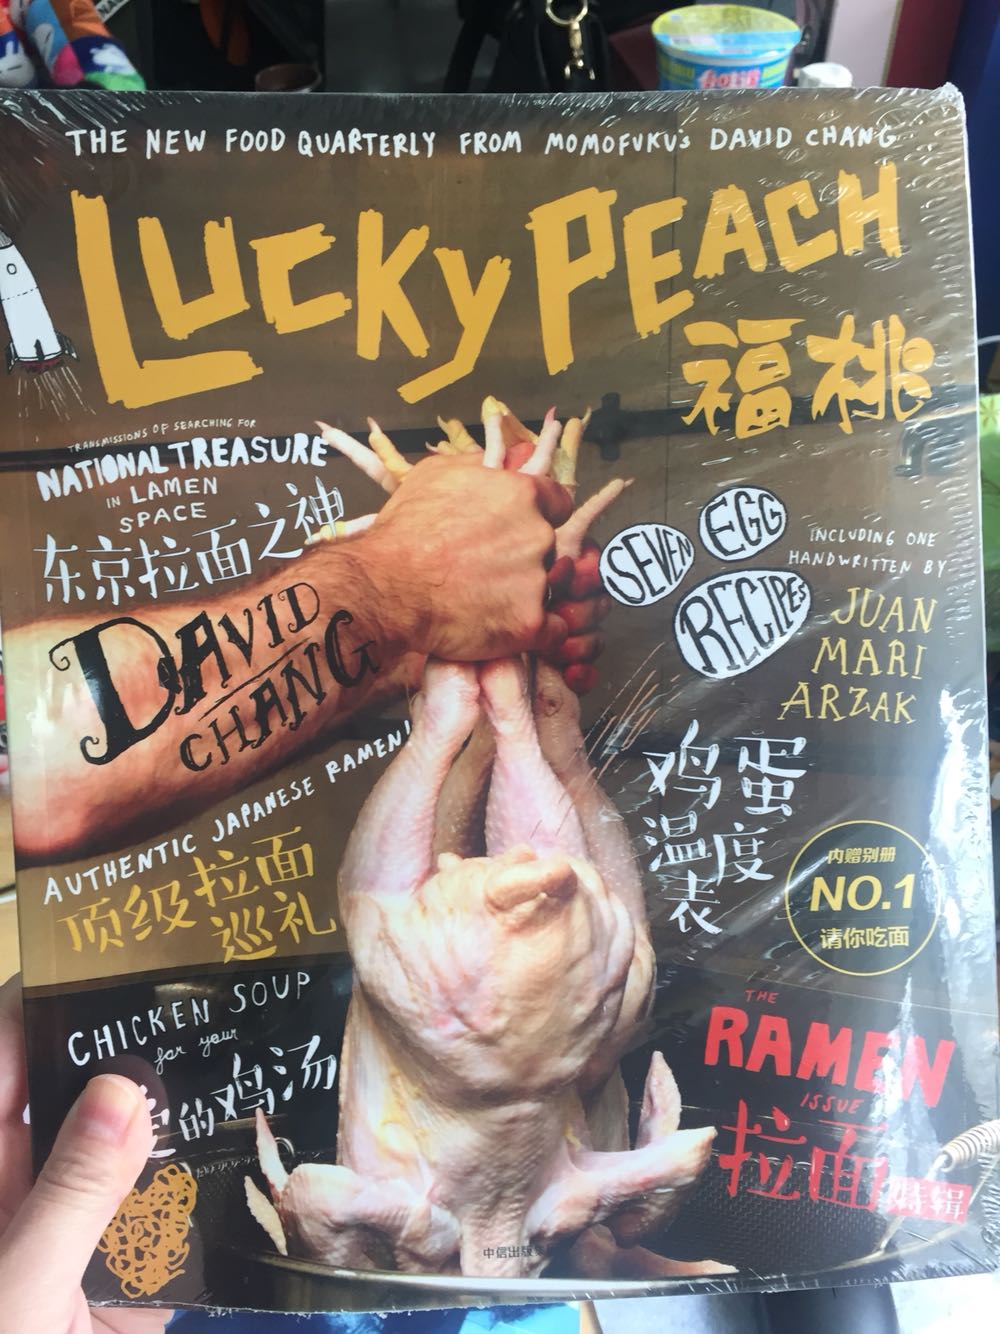 前同事努力把lucky peach引入到国内了，从公众号开始，到杂志，希望做的越来越好。